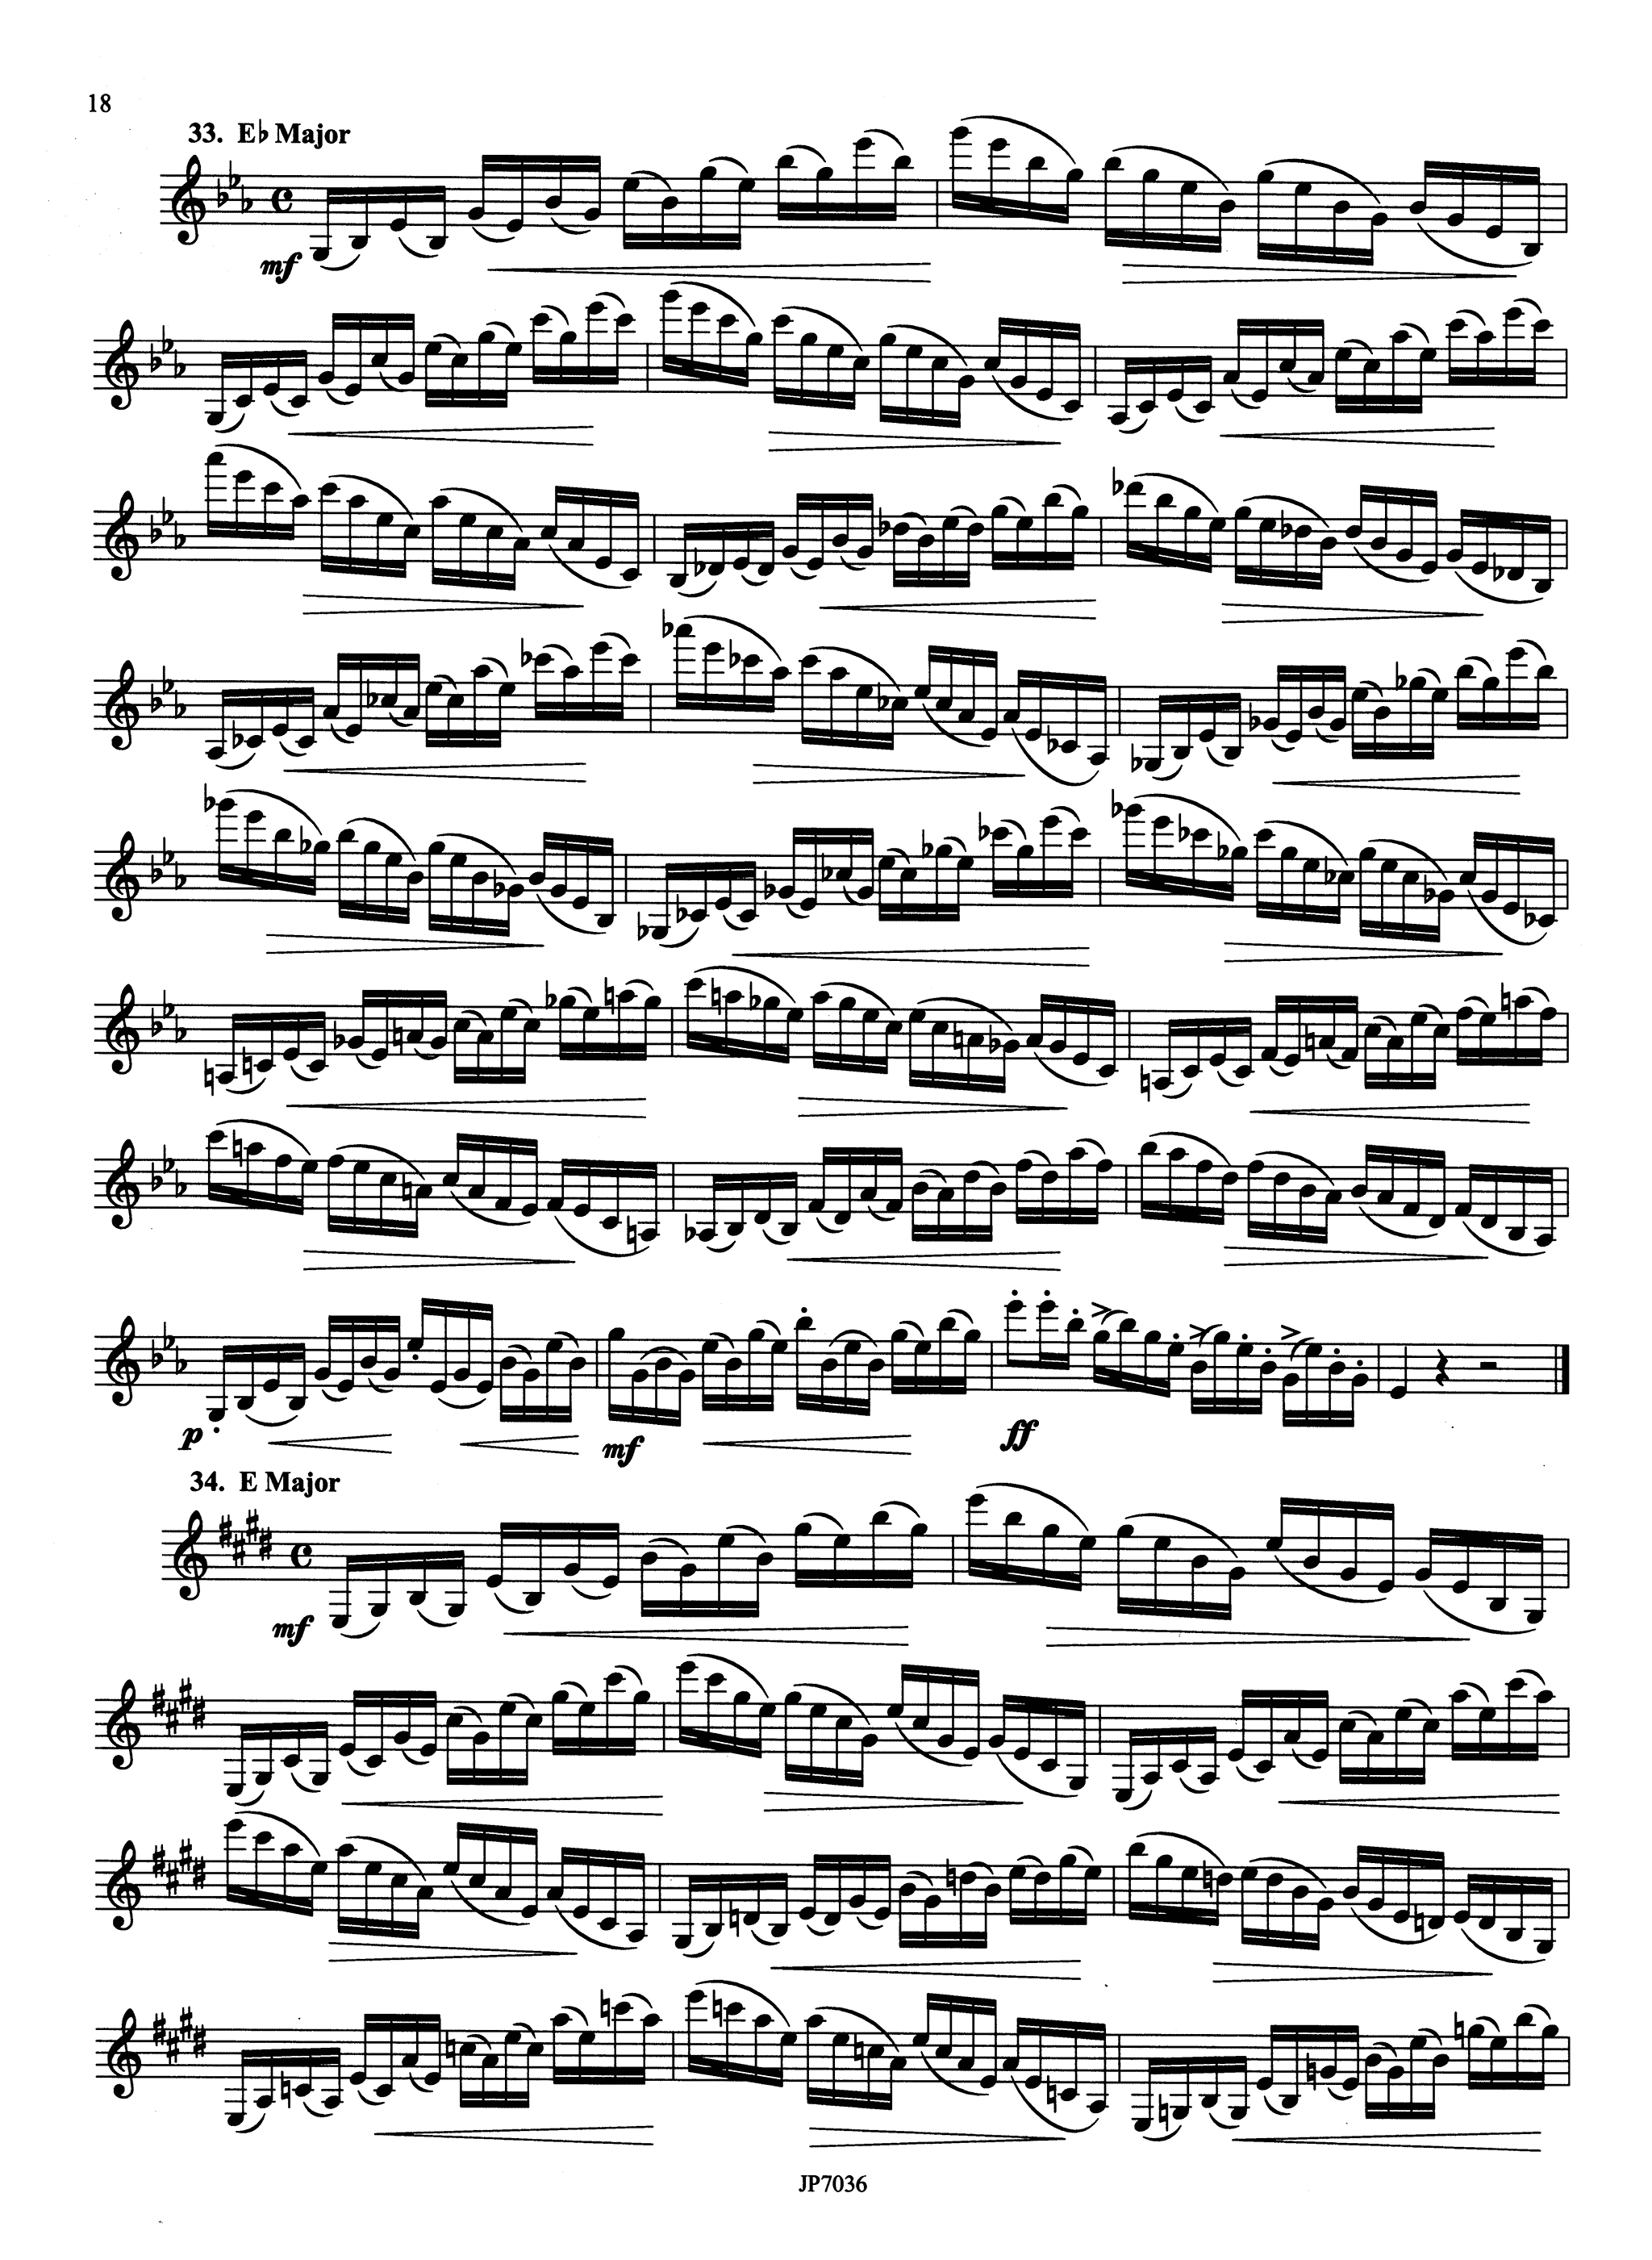 Kroepsch 416 Progressive Clarinet Studies, Book 3 Page 18